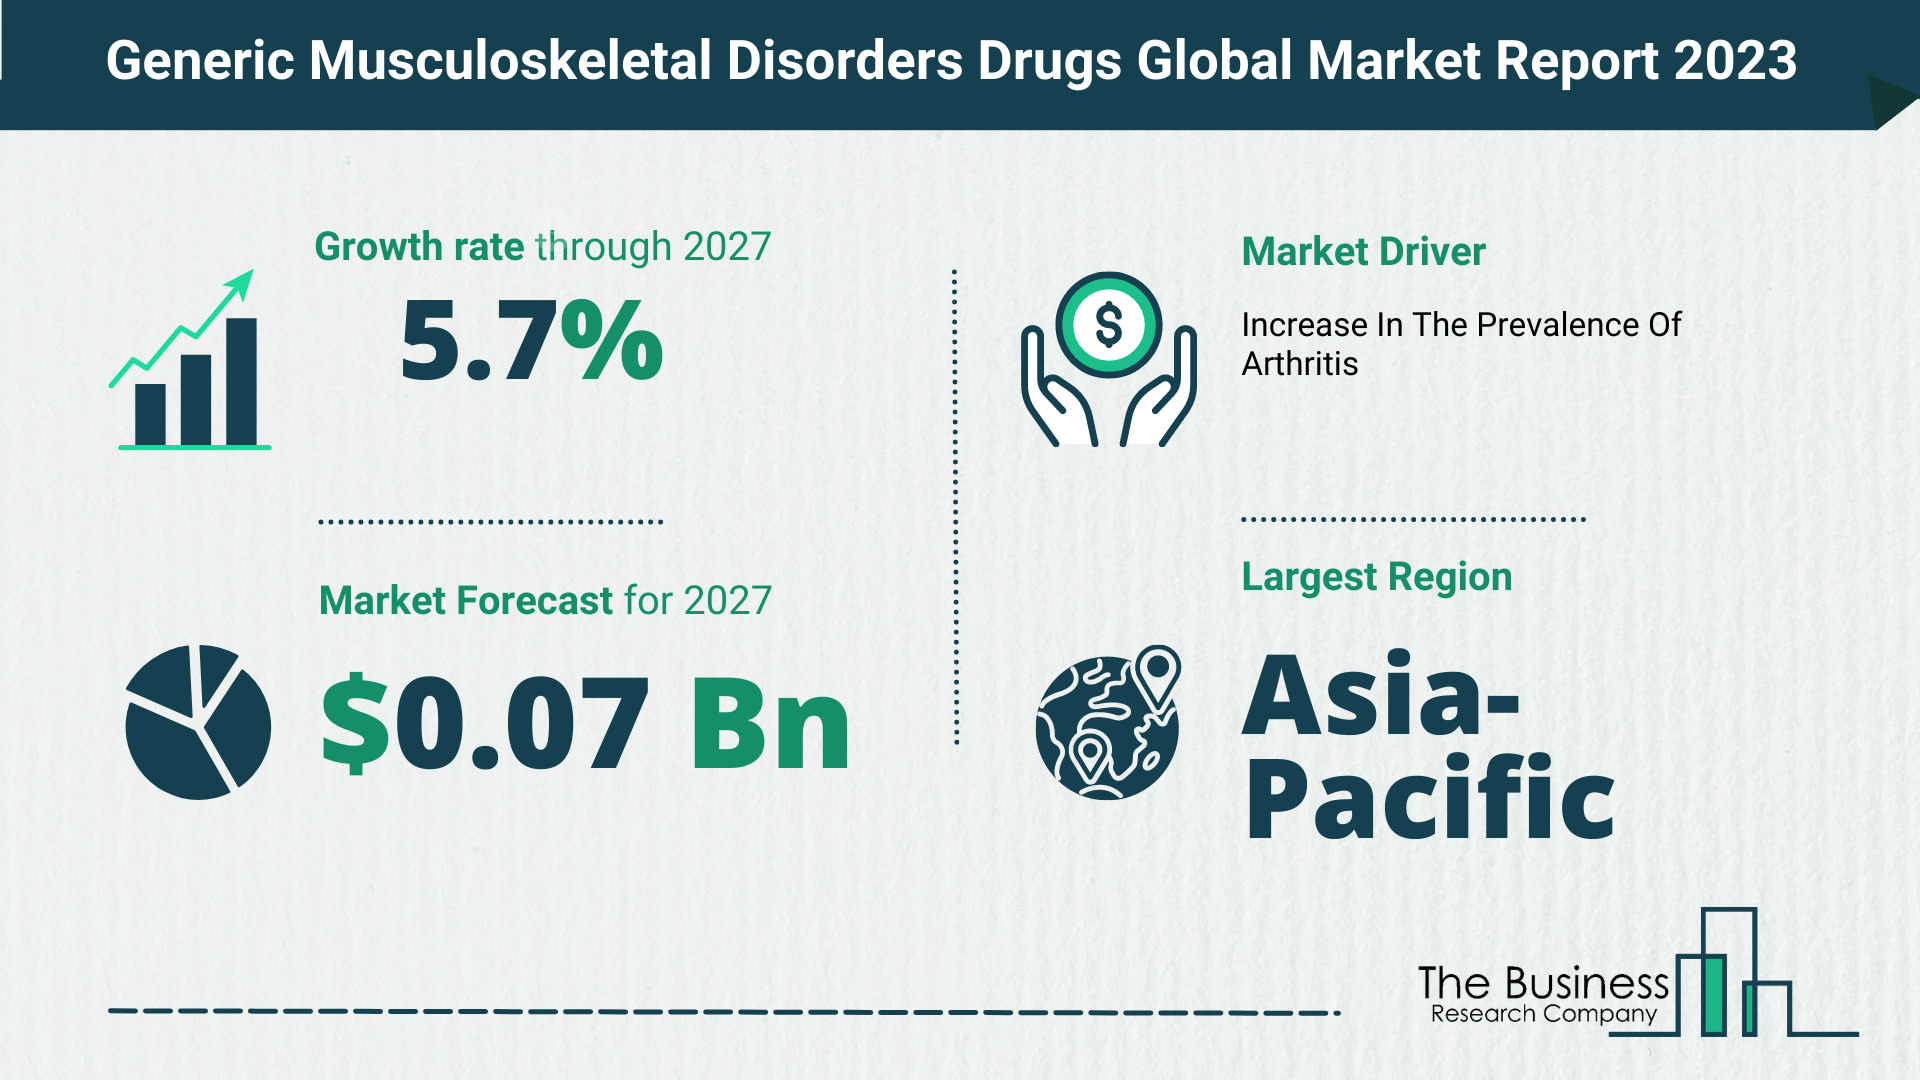 Global Generic Musculoskeletal Disorders Drugs Market